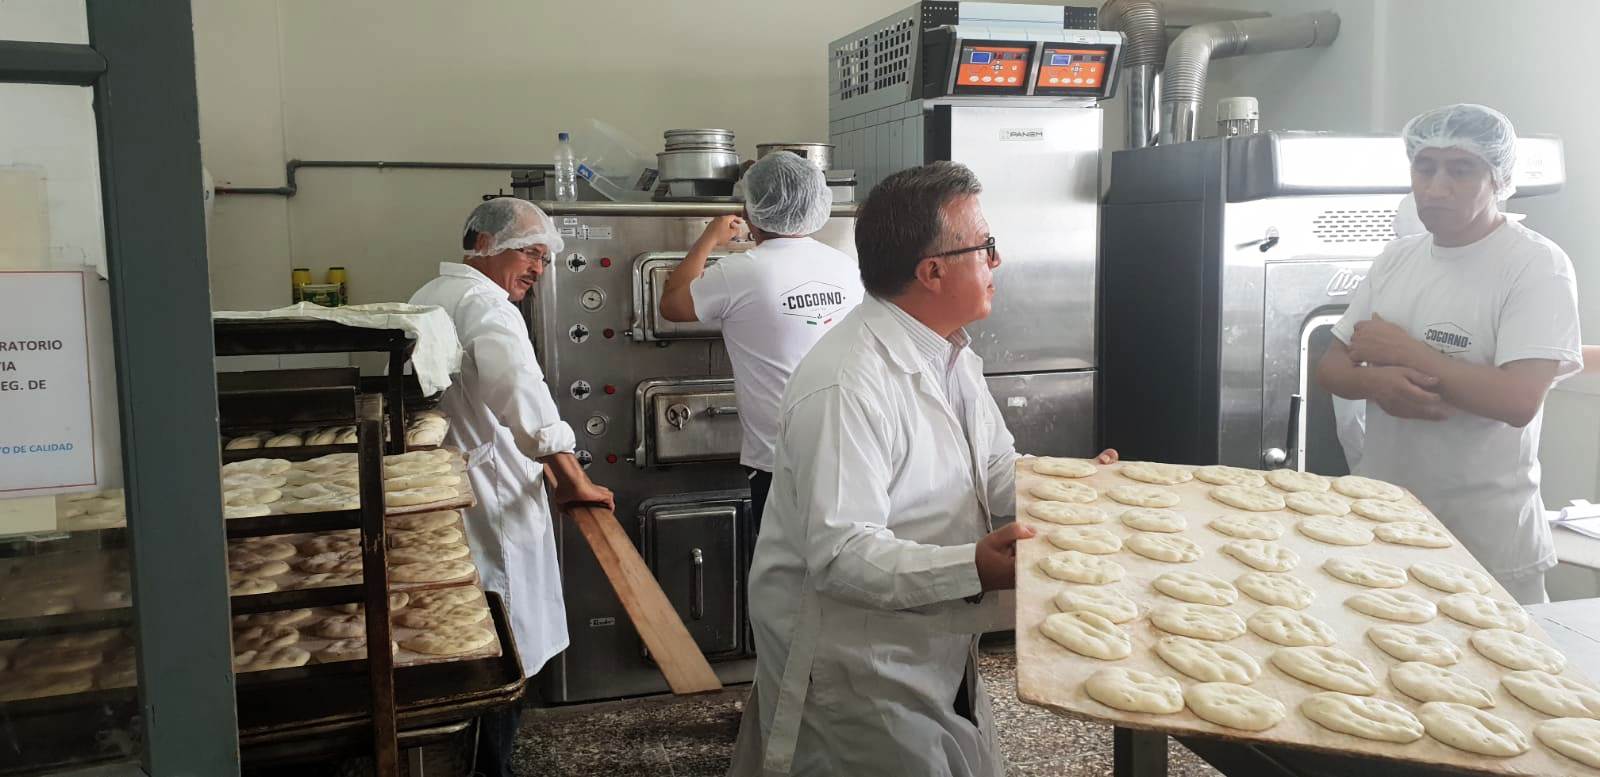 pan panaderia masa madre indespan investigacion y desarrollo panadero pasteleria materia prima sin gluten valencia españa bechamel hosteleria catering saludable